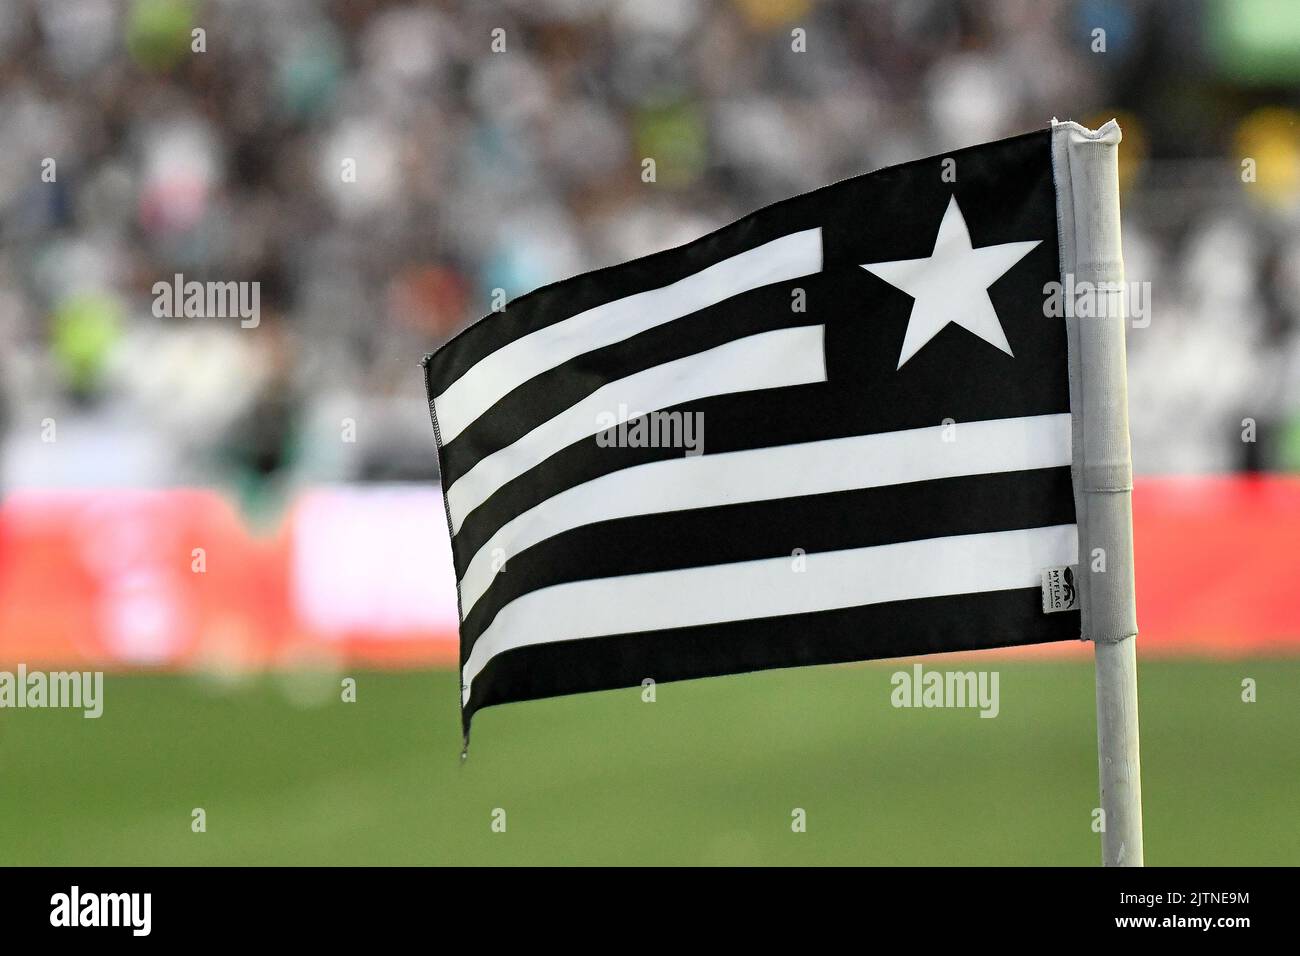 Detalhe da bandeira de escanteio, vista no Estádio Nilton Santos ( Engenhão ) momentos antes da partida entre Botafogo e Flamengo, pela 24ª rodada do Campeonato Brasileiro Série A 2022, neste domingo 28. Stock Photo